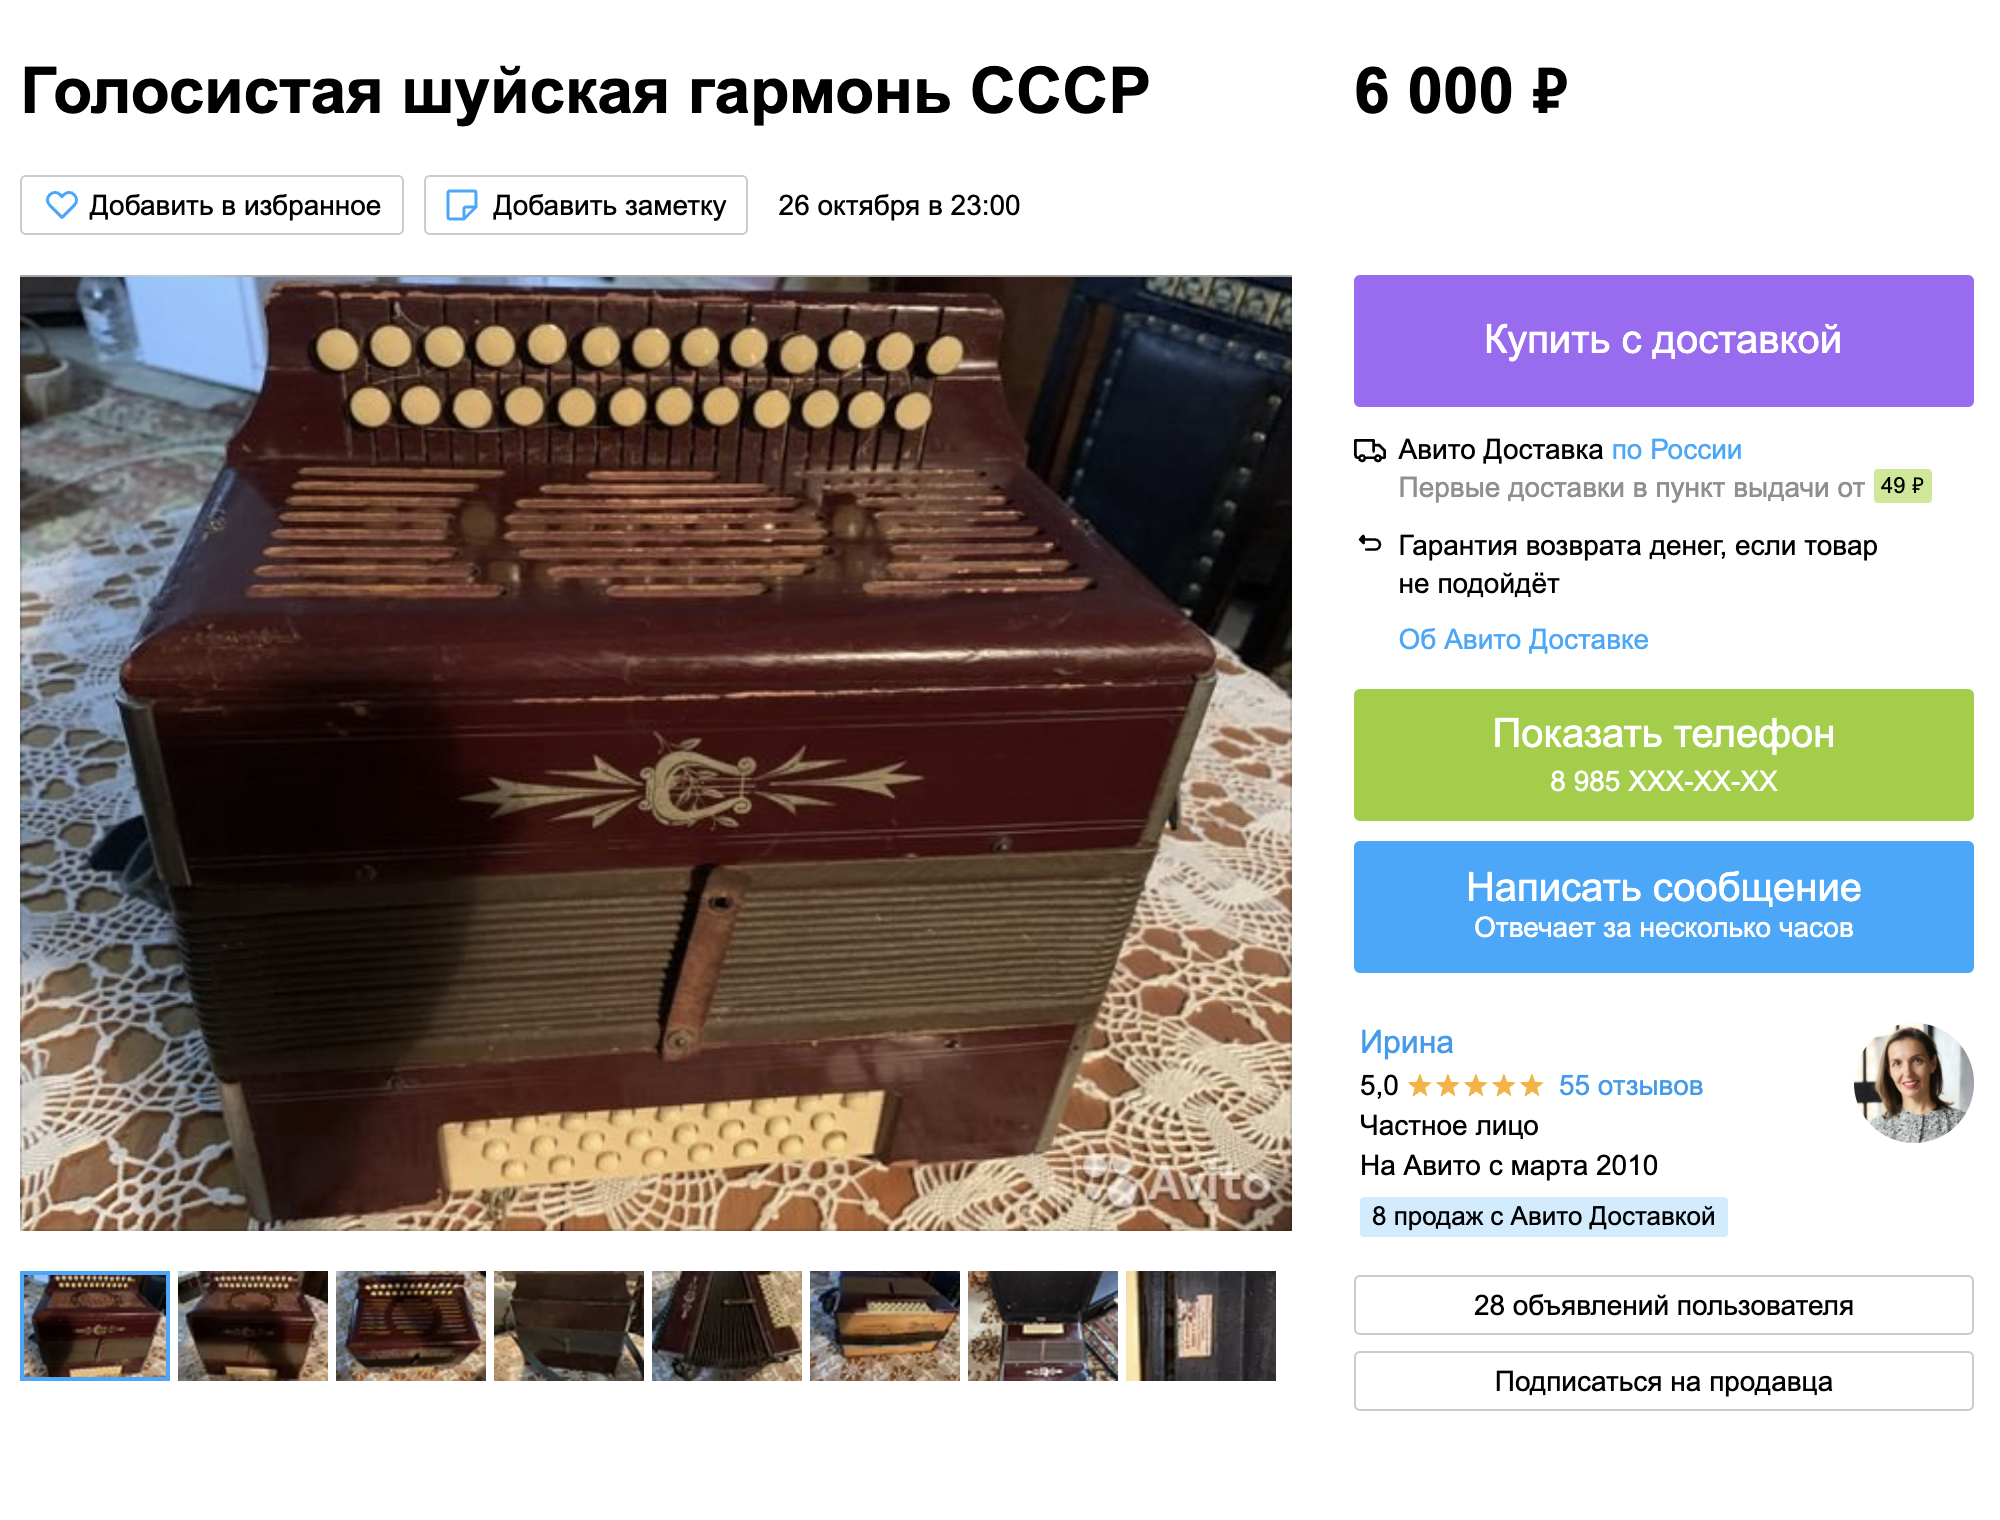 Мы нашли похожую гармонь на «Авито», ее продавали за 6000 ₽. Источник: avito.ru